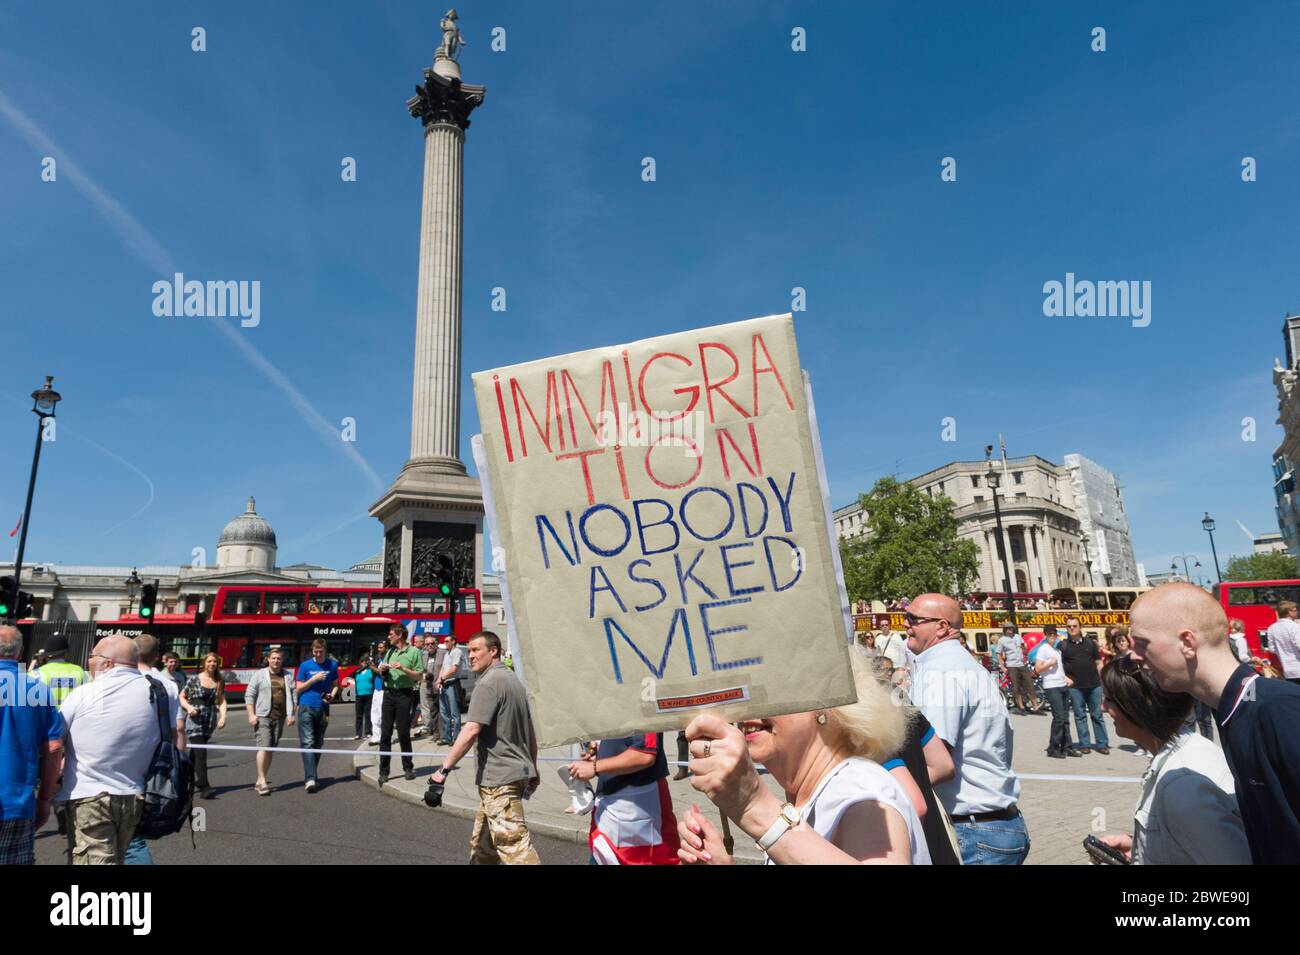 Ein Protestler gegen die Einwanderung auf einem marsch, der von einer Gruppe organisiert wurde, die sich "britische Bürger gegen muslimische Extremisten" nennt. Der Protest ist über die per Stockfoto